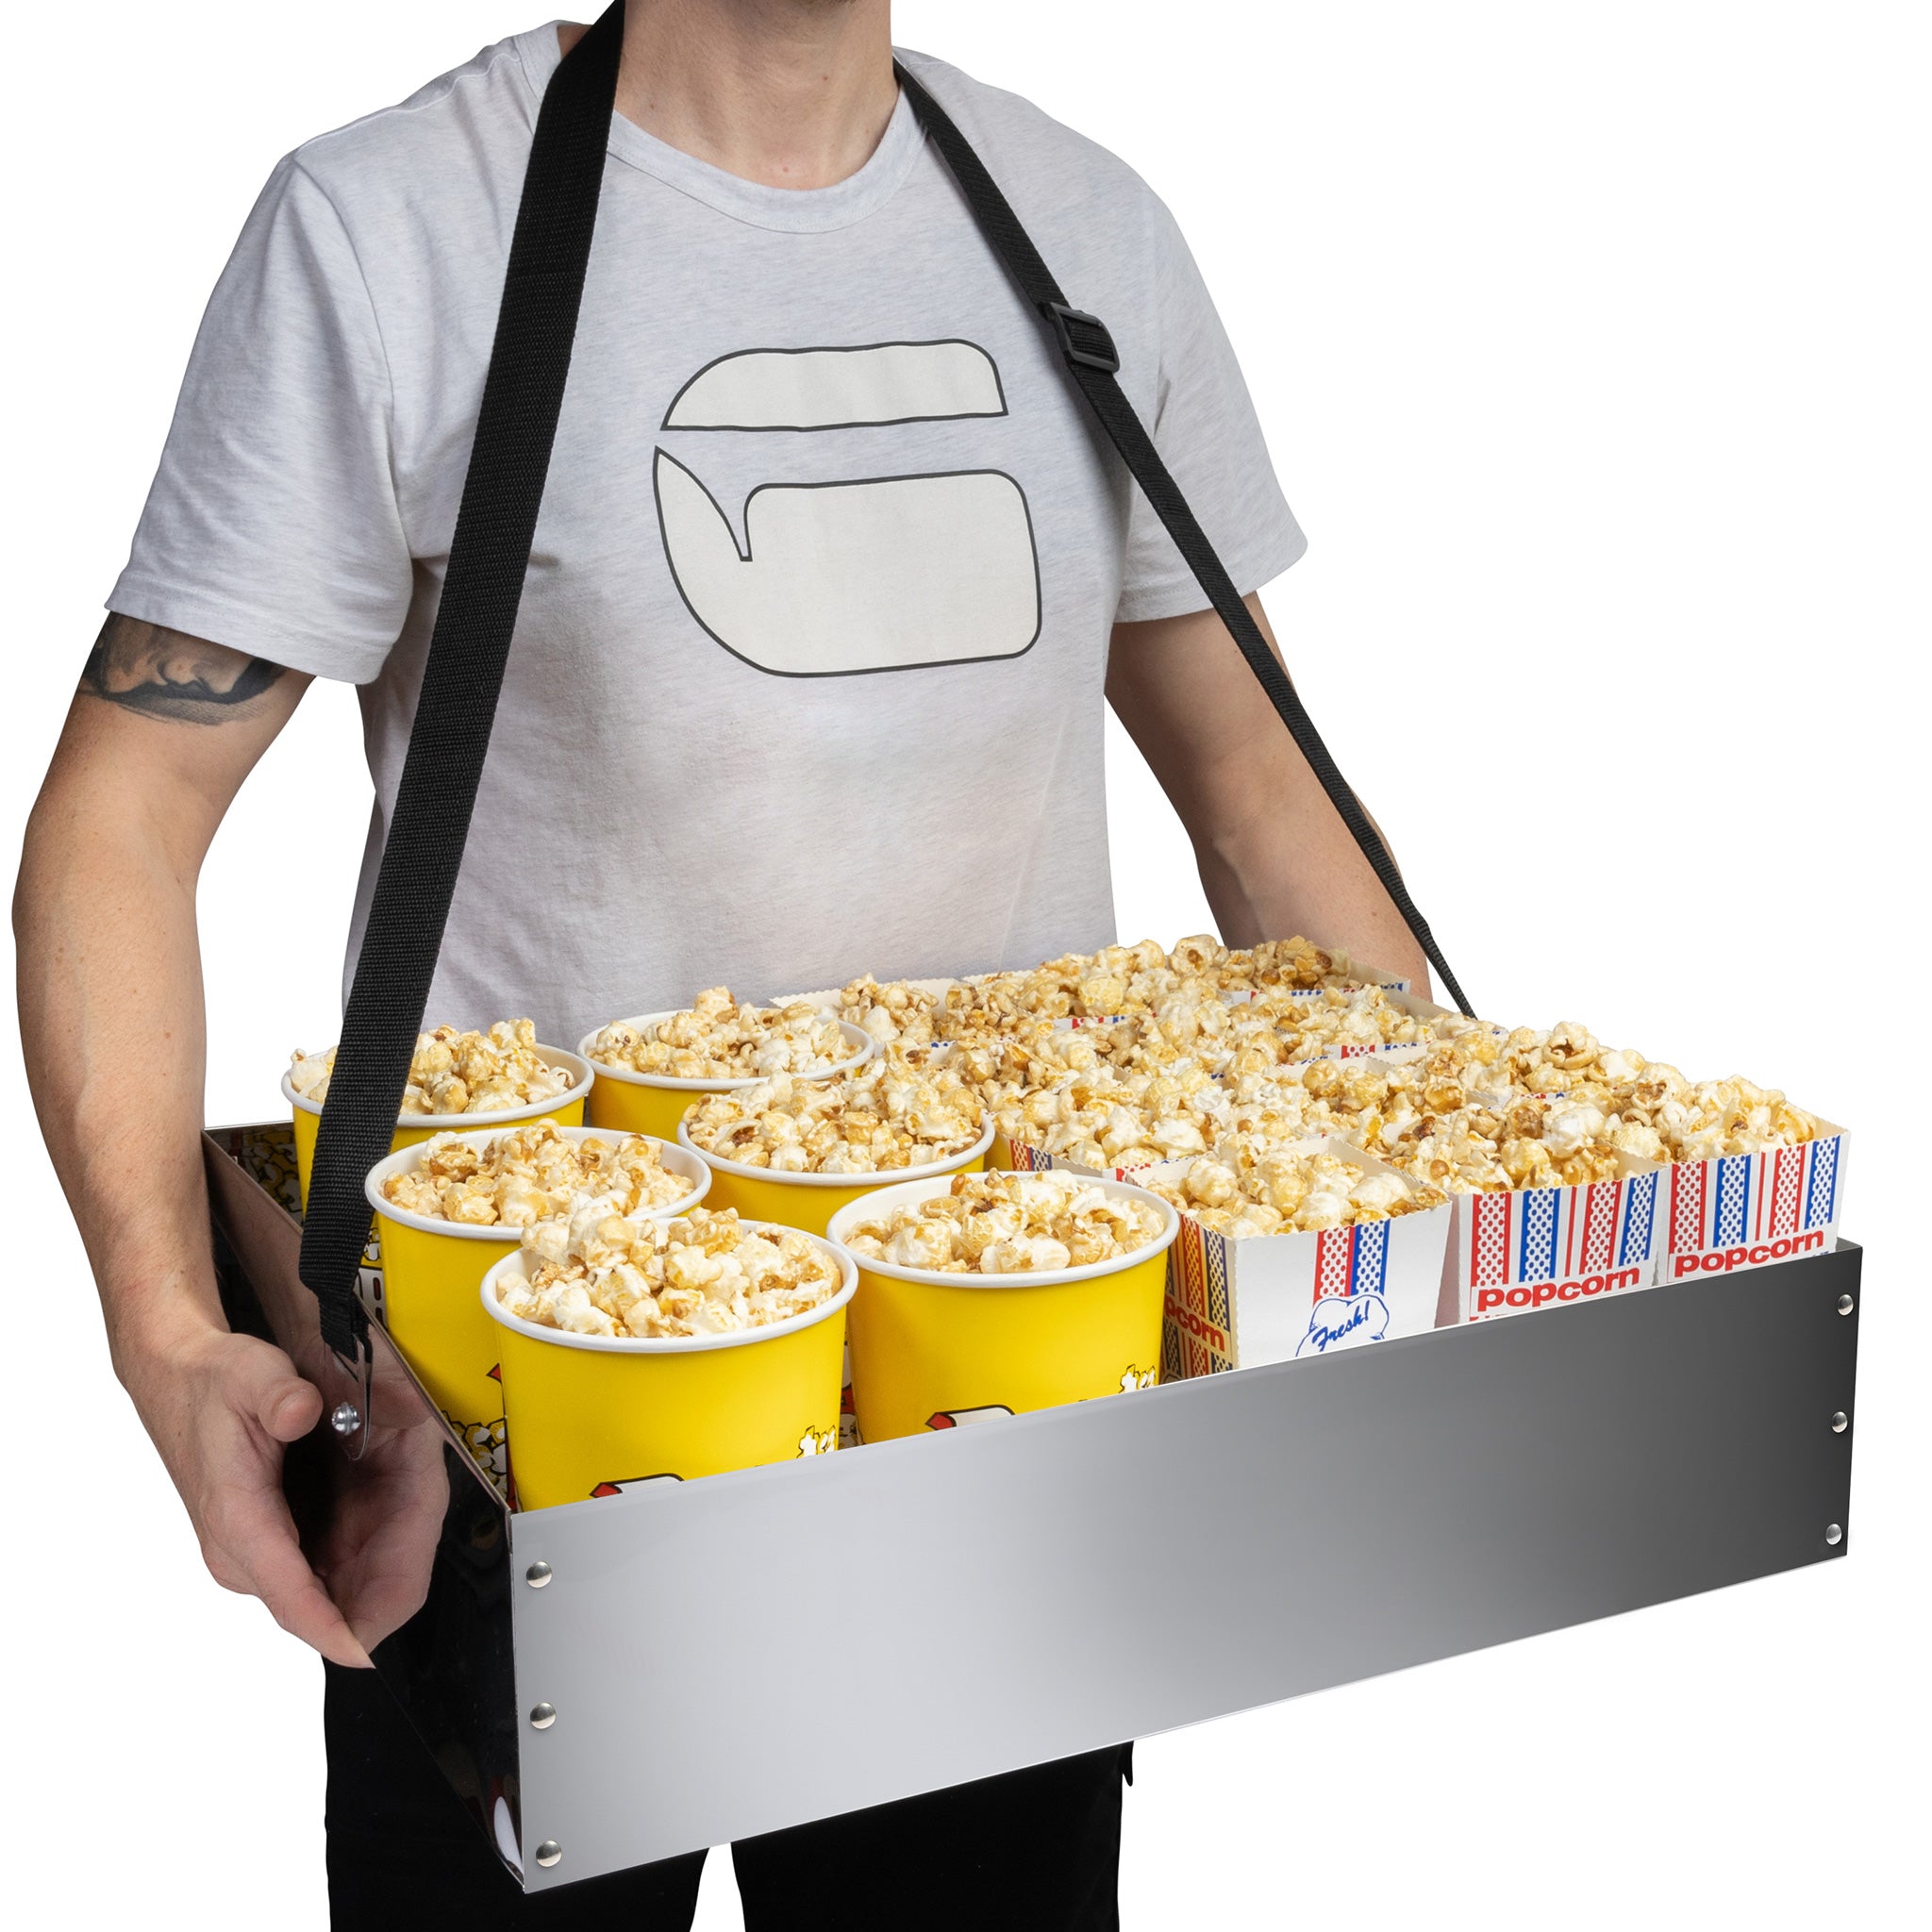 Popcorn Vendor Tray